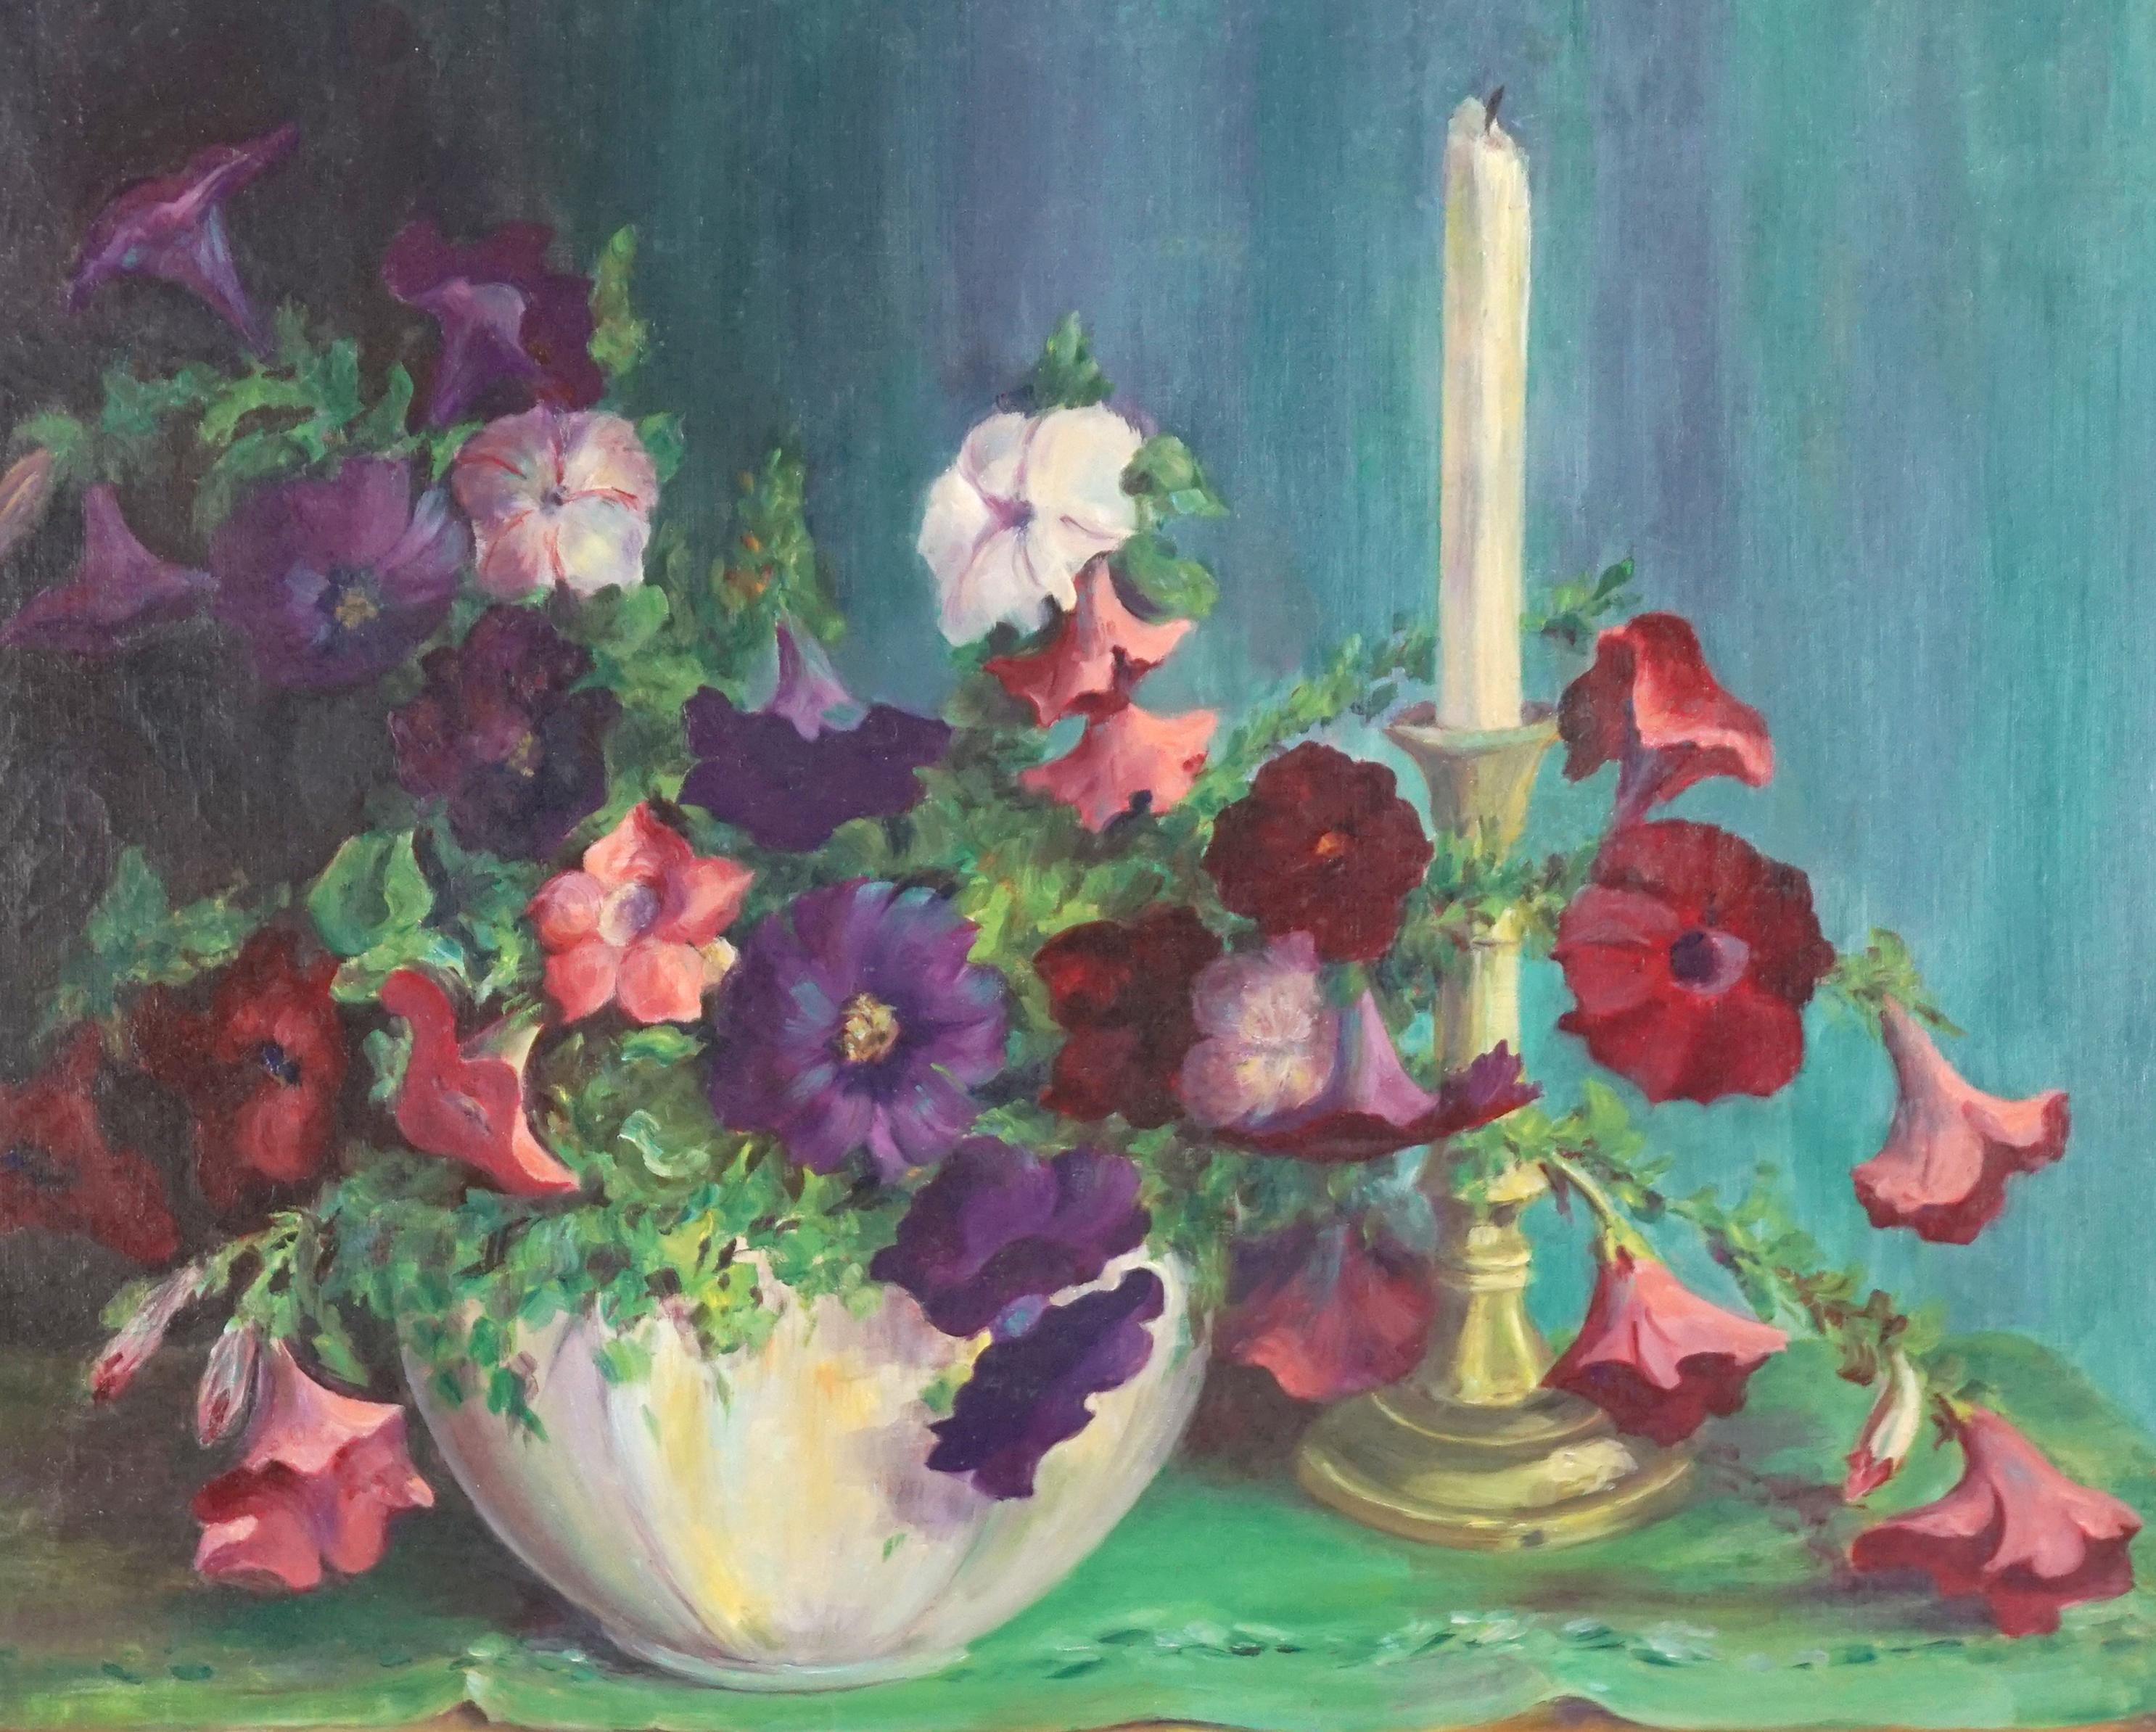 Leuchtend geblümtes Stillleben mit Petunias und Kerzenständer aus den 1930er Jahren – Painting von Jennie Thatcher Crawford